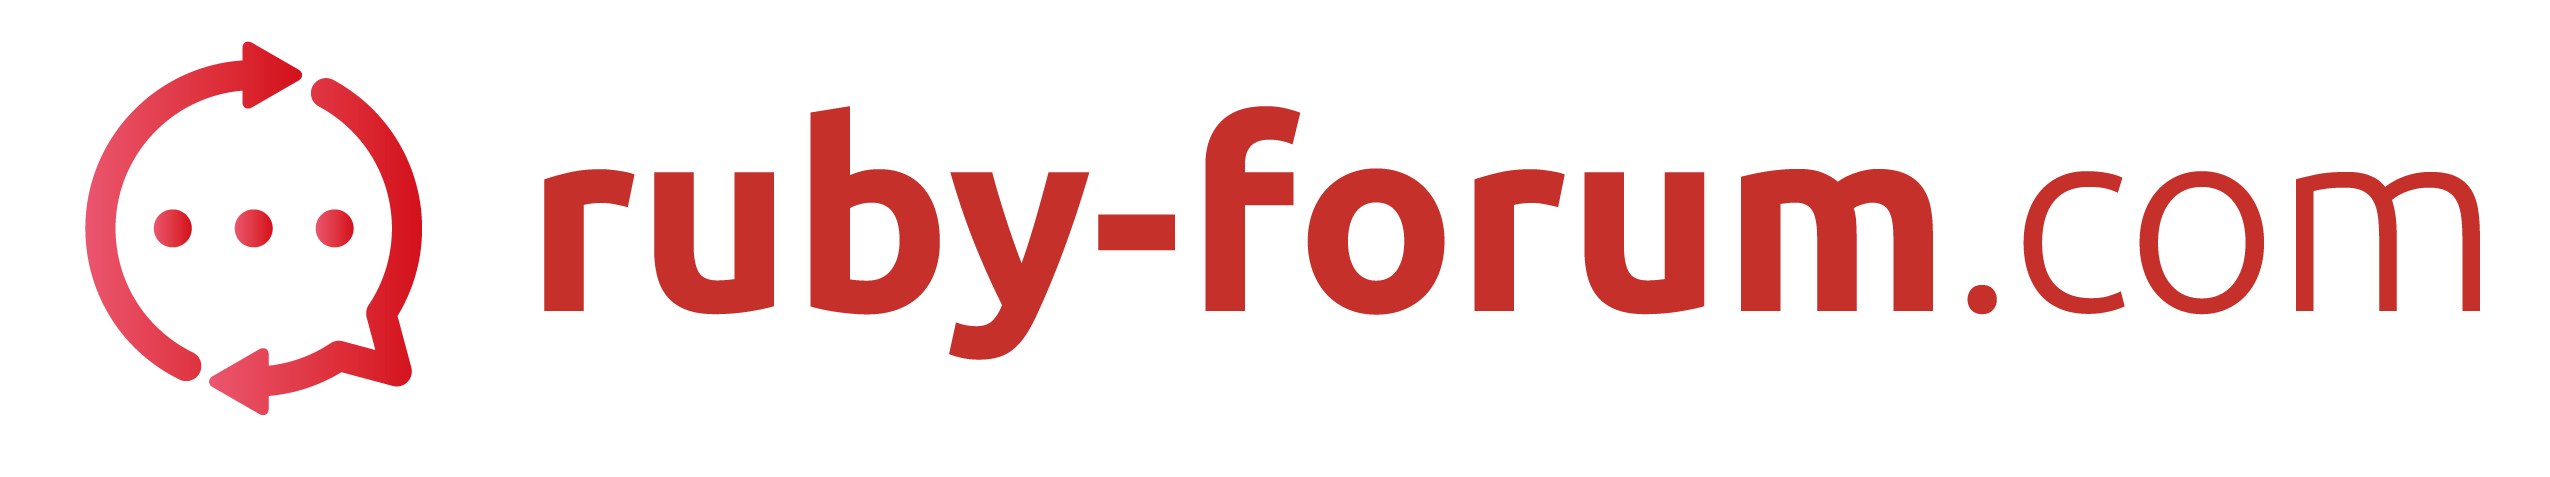 Ruby-Forum